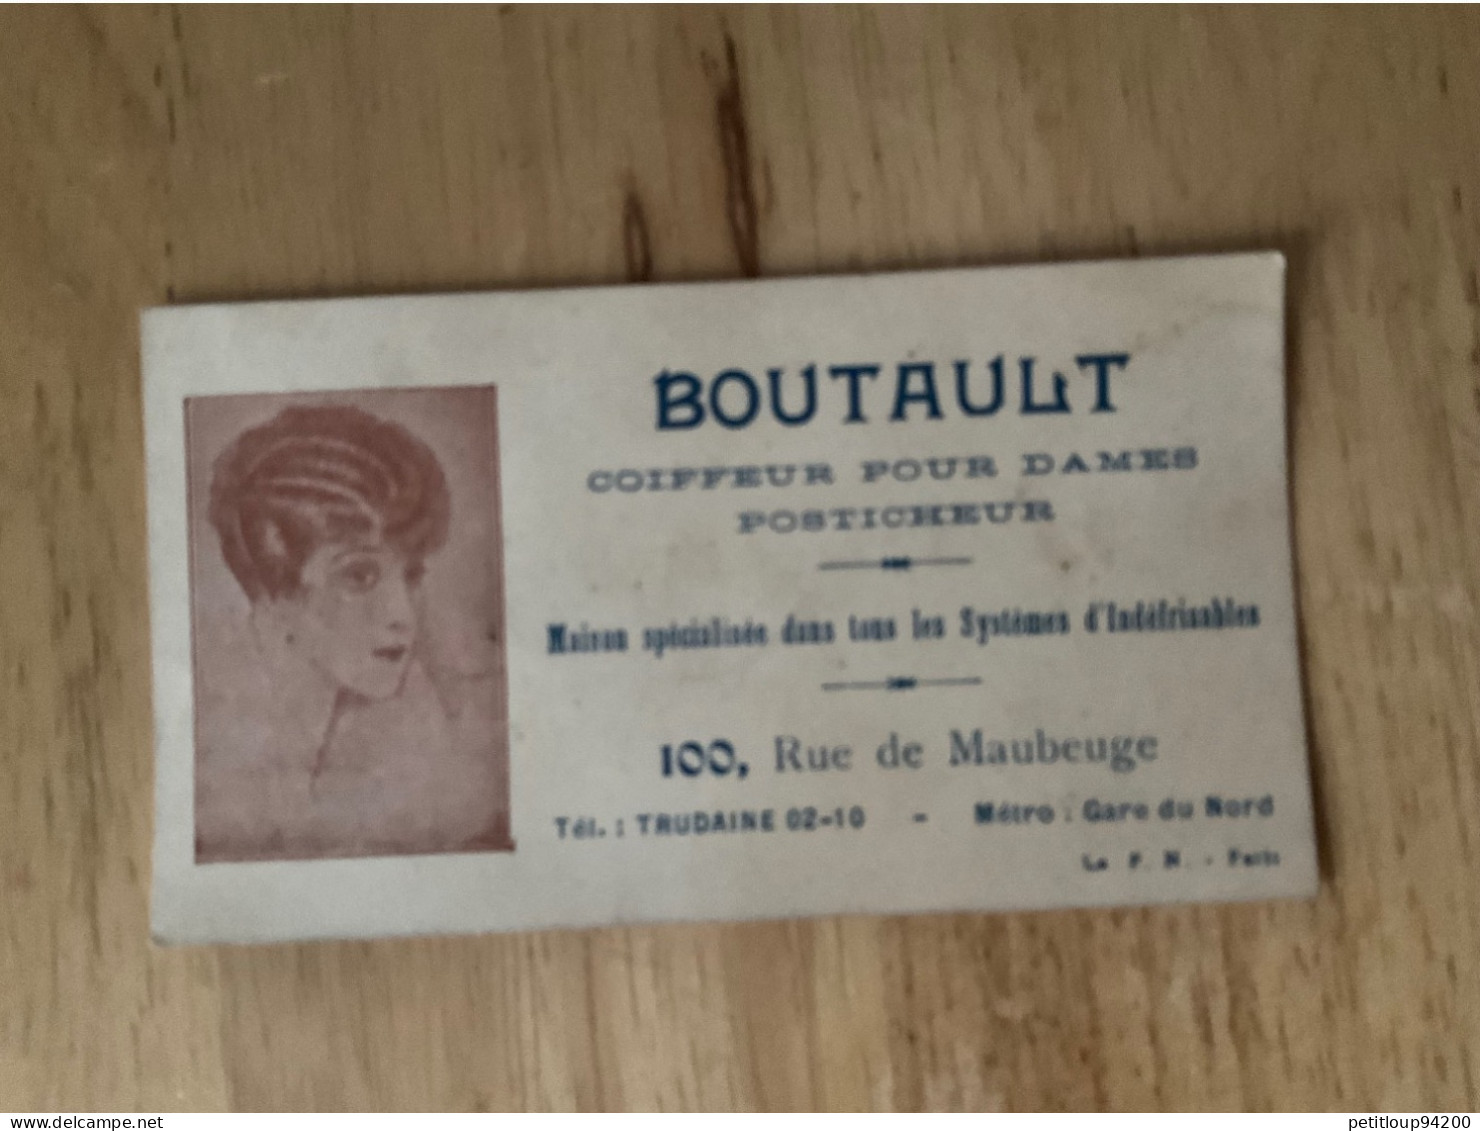 CARTE DE VISITE Coiffeur Pour Dames  Posticheur  BOUTAULT  Paris - Cartes De Visite